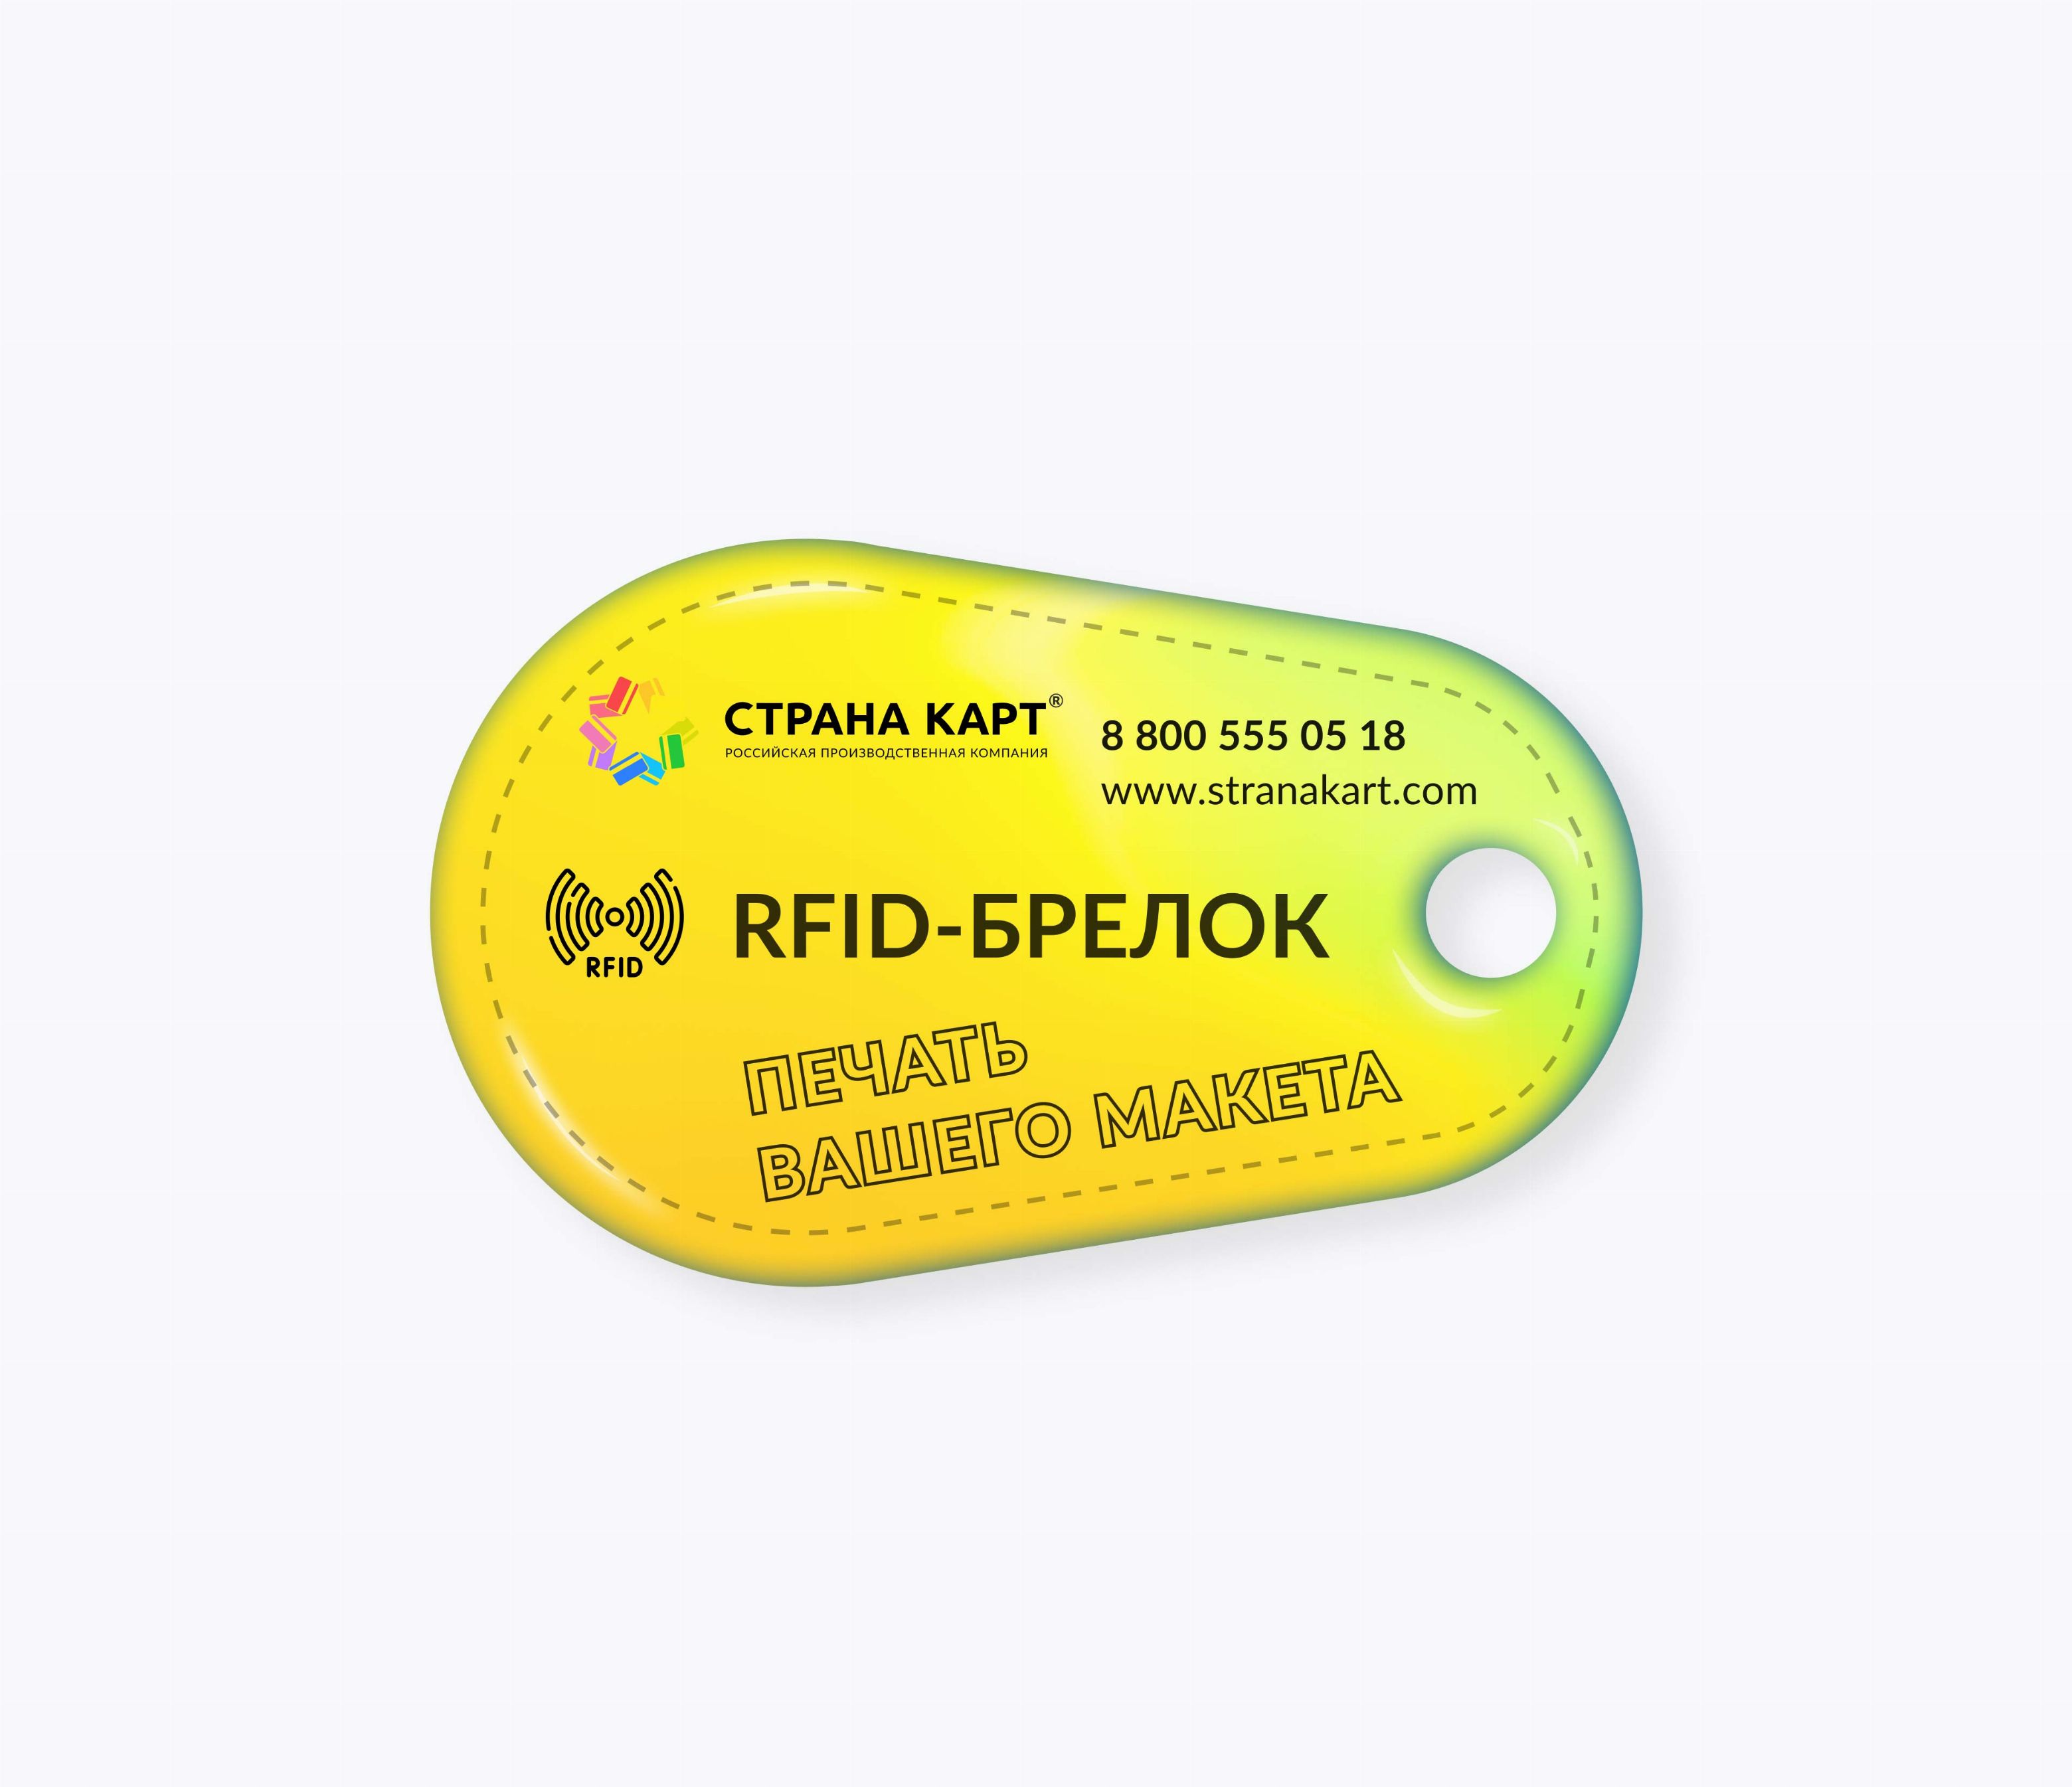 Каплевидные RFID-брелоки NEOKEY® с чипом NXP MIFARE Classic 1k 4 byte nUID RFID-брелоки NEOKEY® с чипом NXP MIFARE Classic 1k 4 byte nUID и вашим логотипом